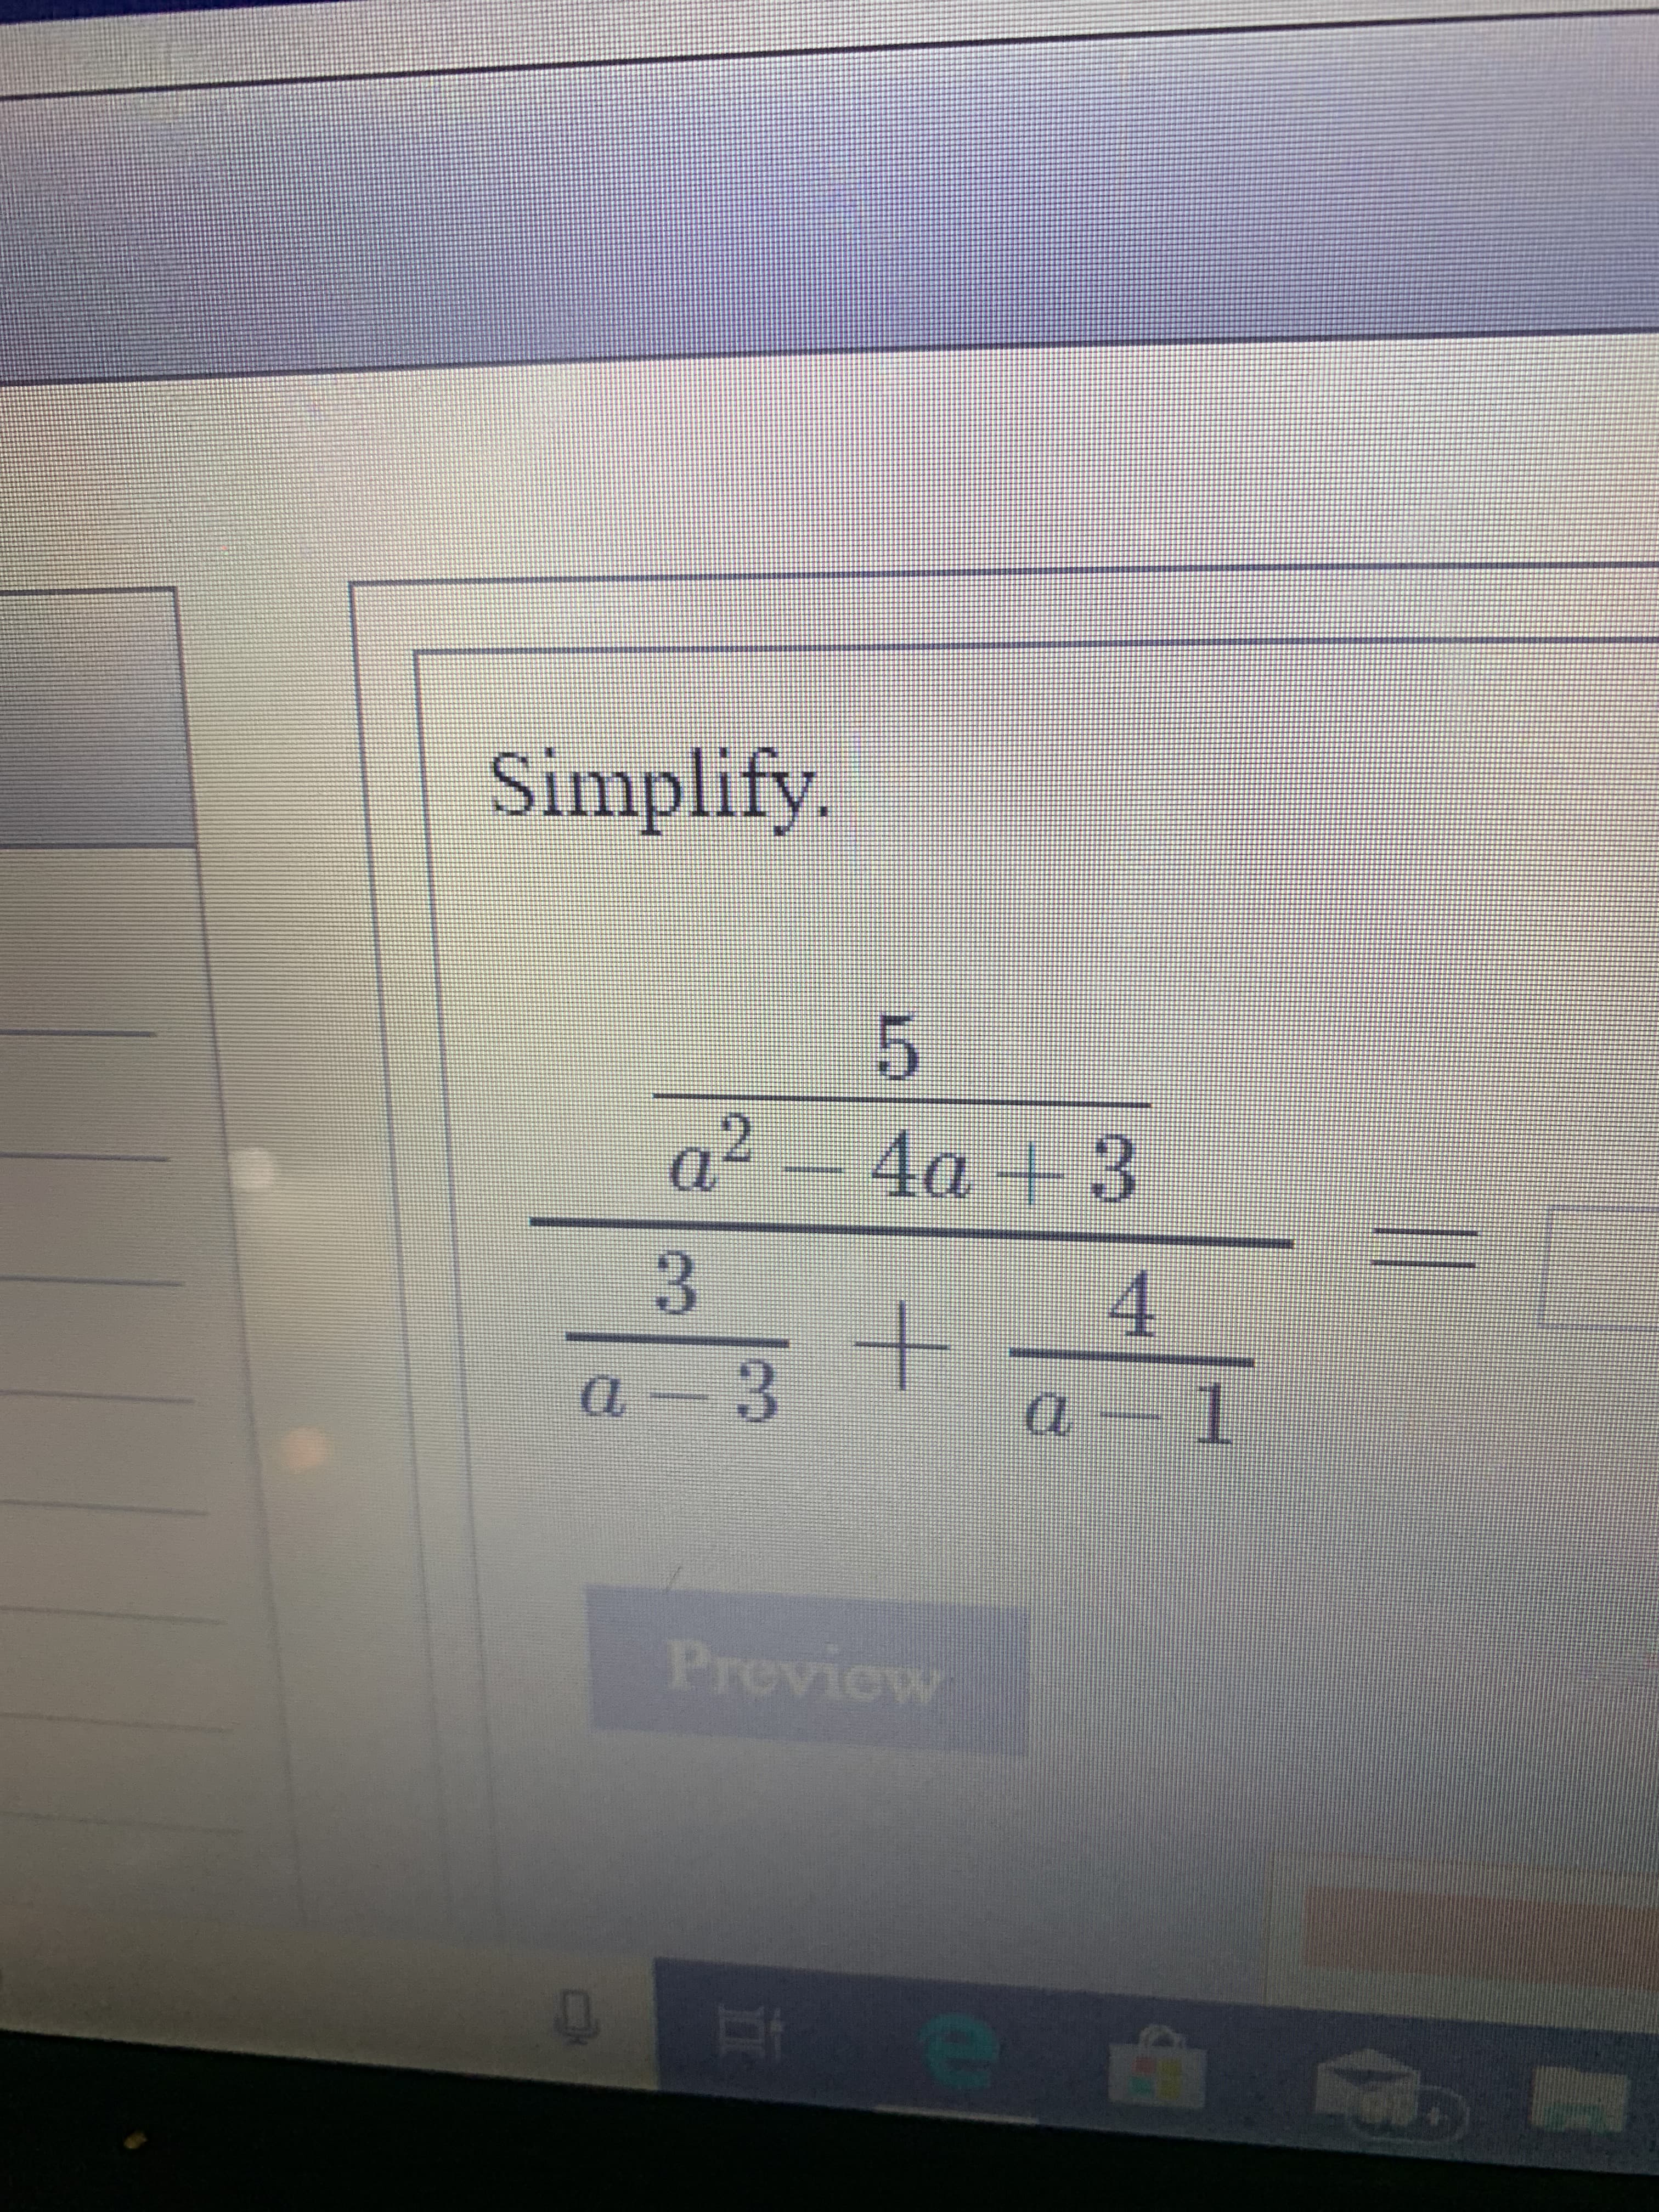 Simplify.
a2 4a +3
3
4
a 1
a 3
Preview
+
